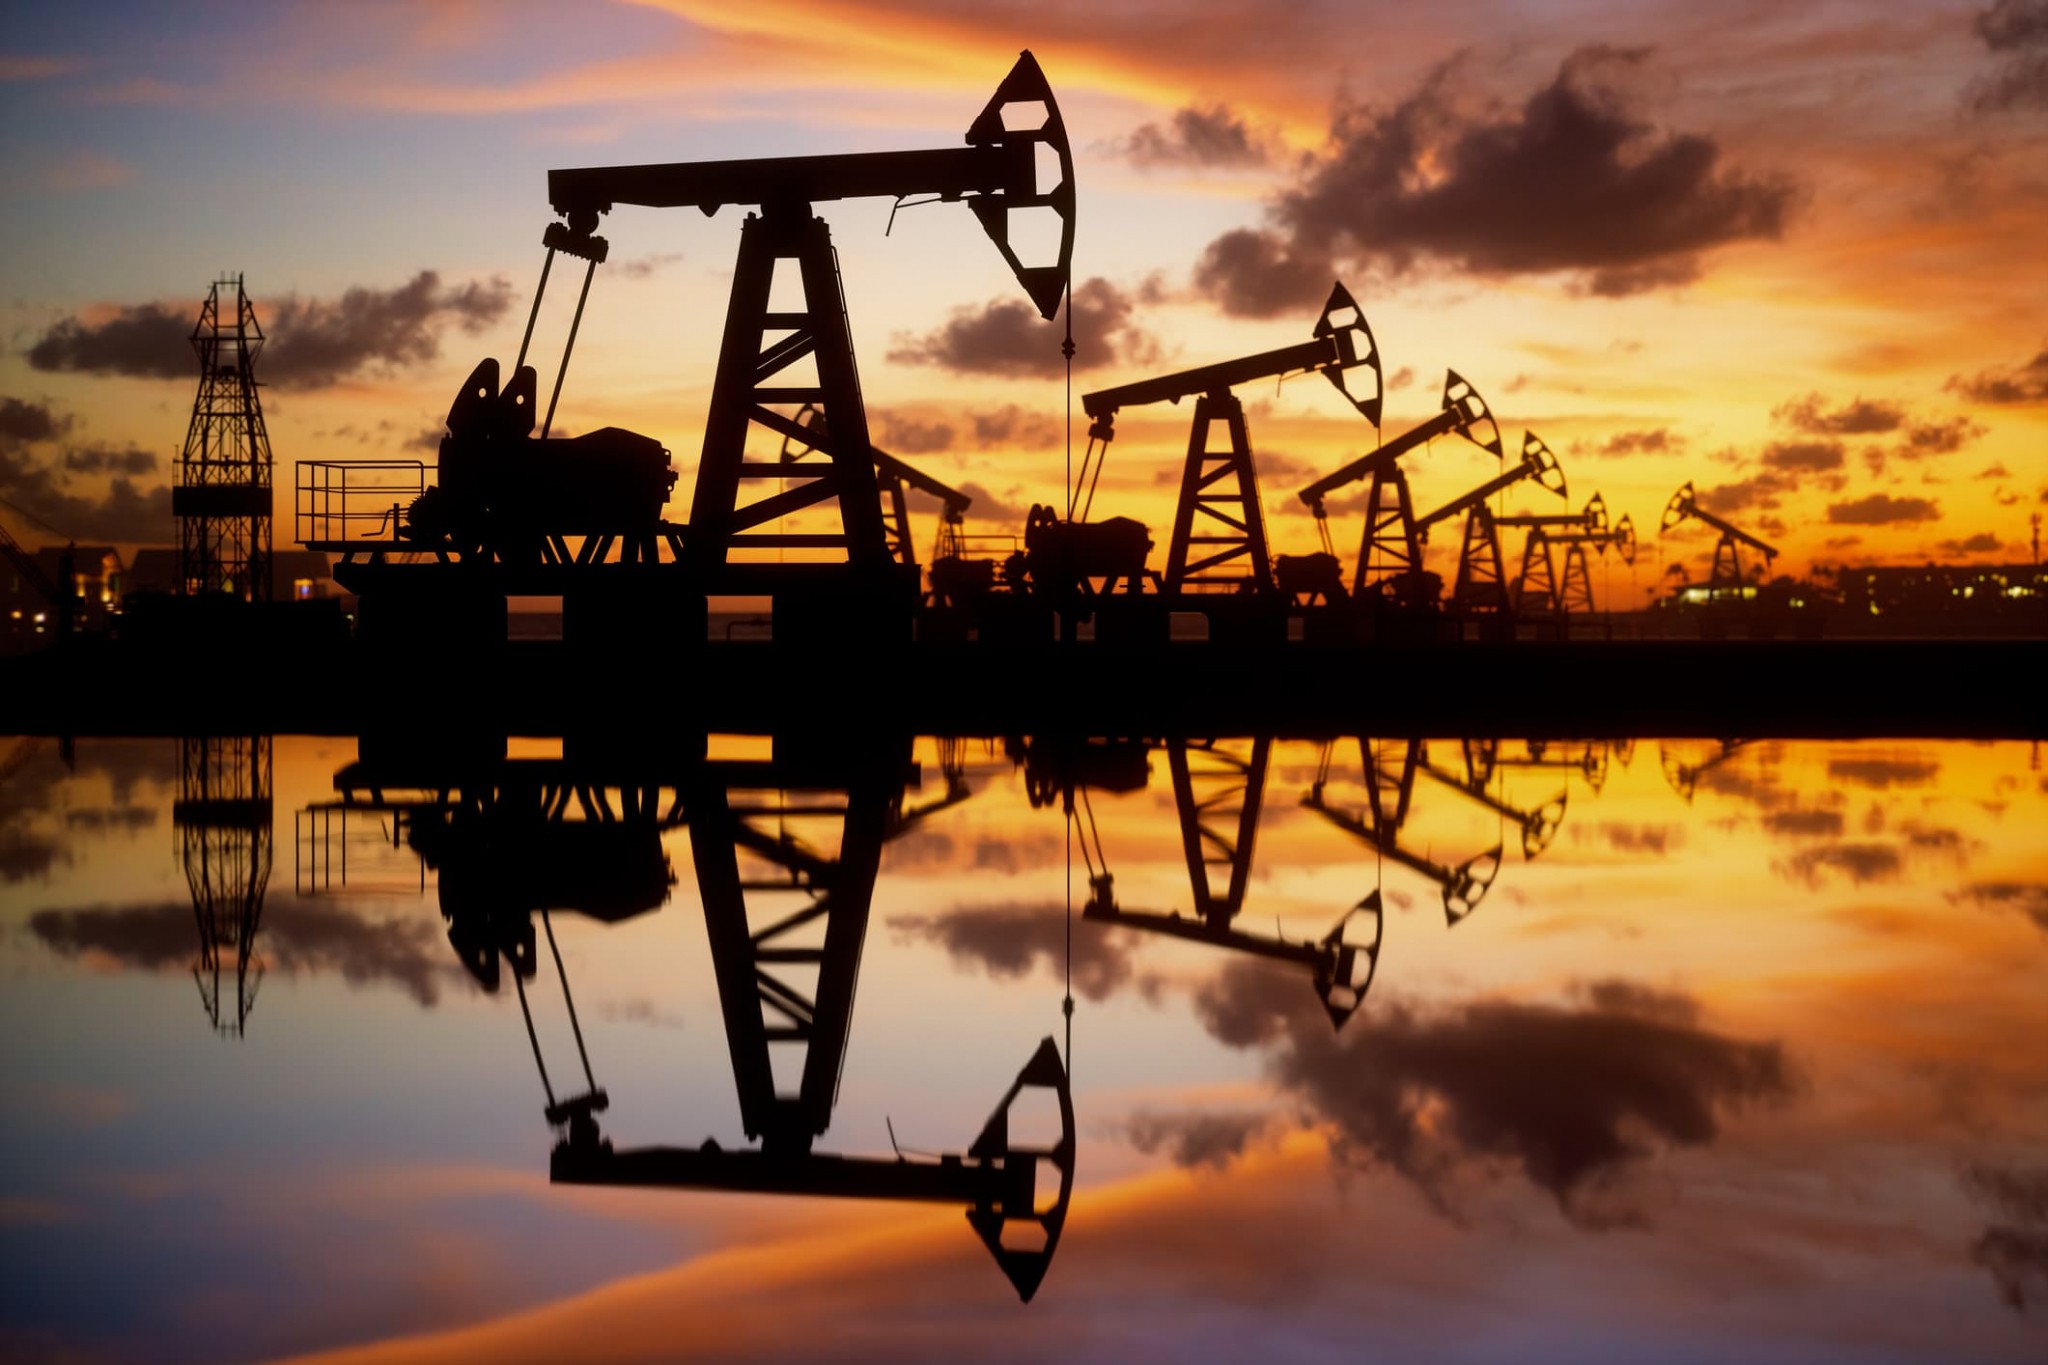 Σ. Αραβία, Αλγερία, Ιράκ, ΗΑΕ, Κουβέιτ ανακοίνωσαν μείωση της παραγωγής πετρελαίου